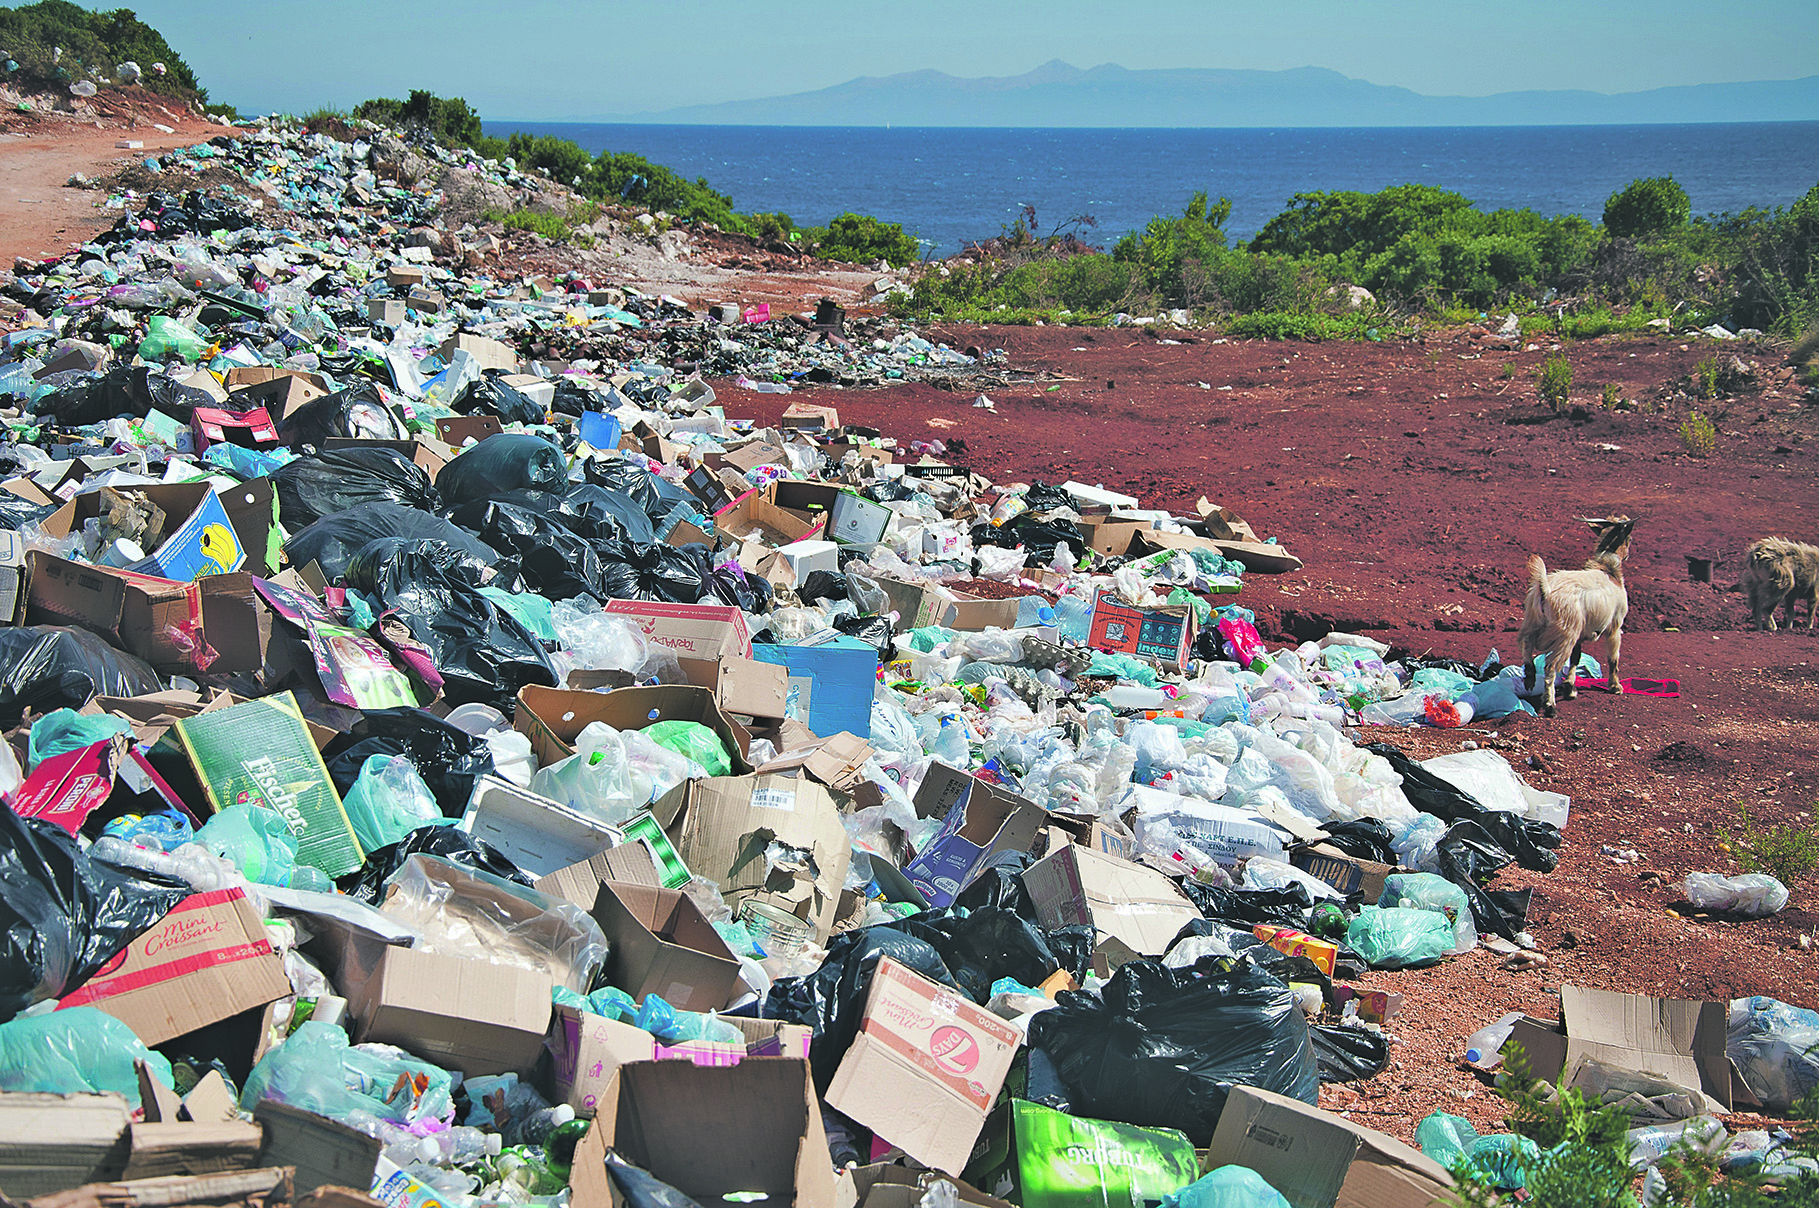 Meg kell tanulnunk, hogyan juttathatjuk vissza a hulladékká vált anyagokat a körforgásba